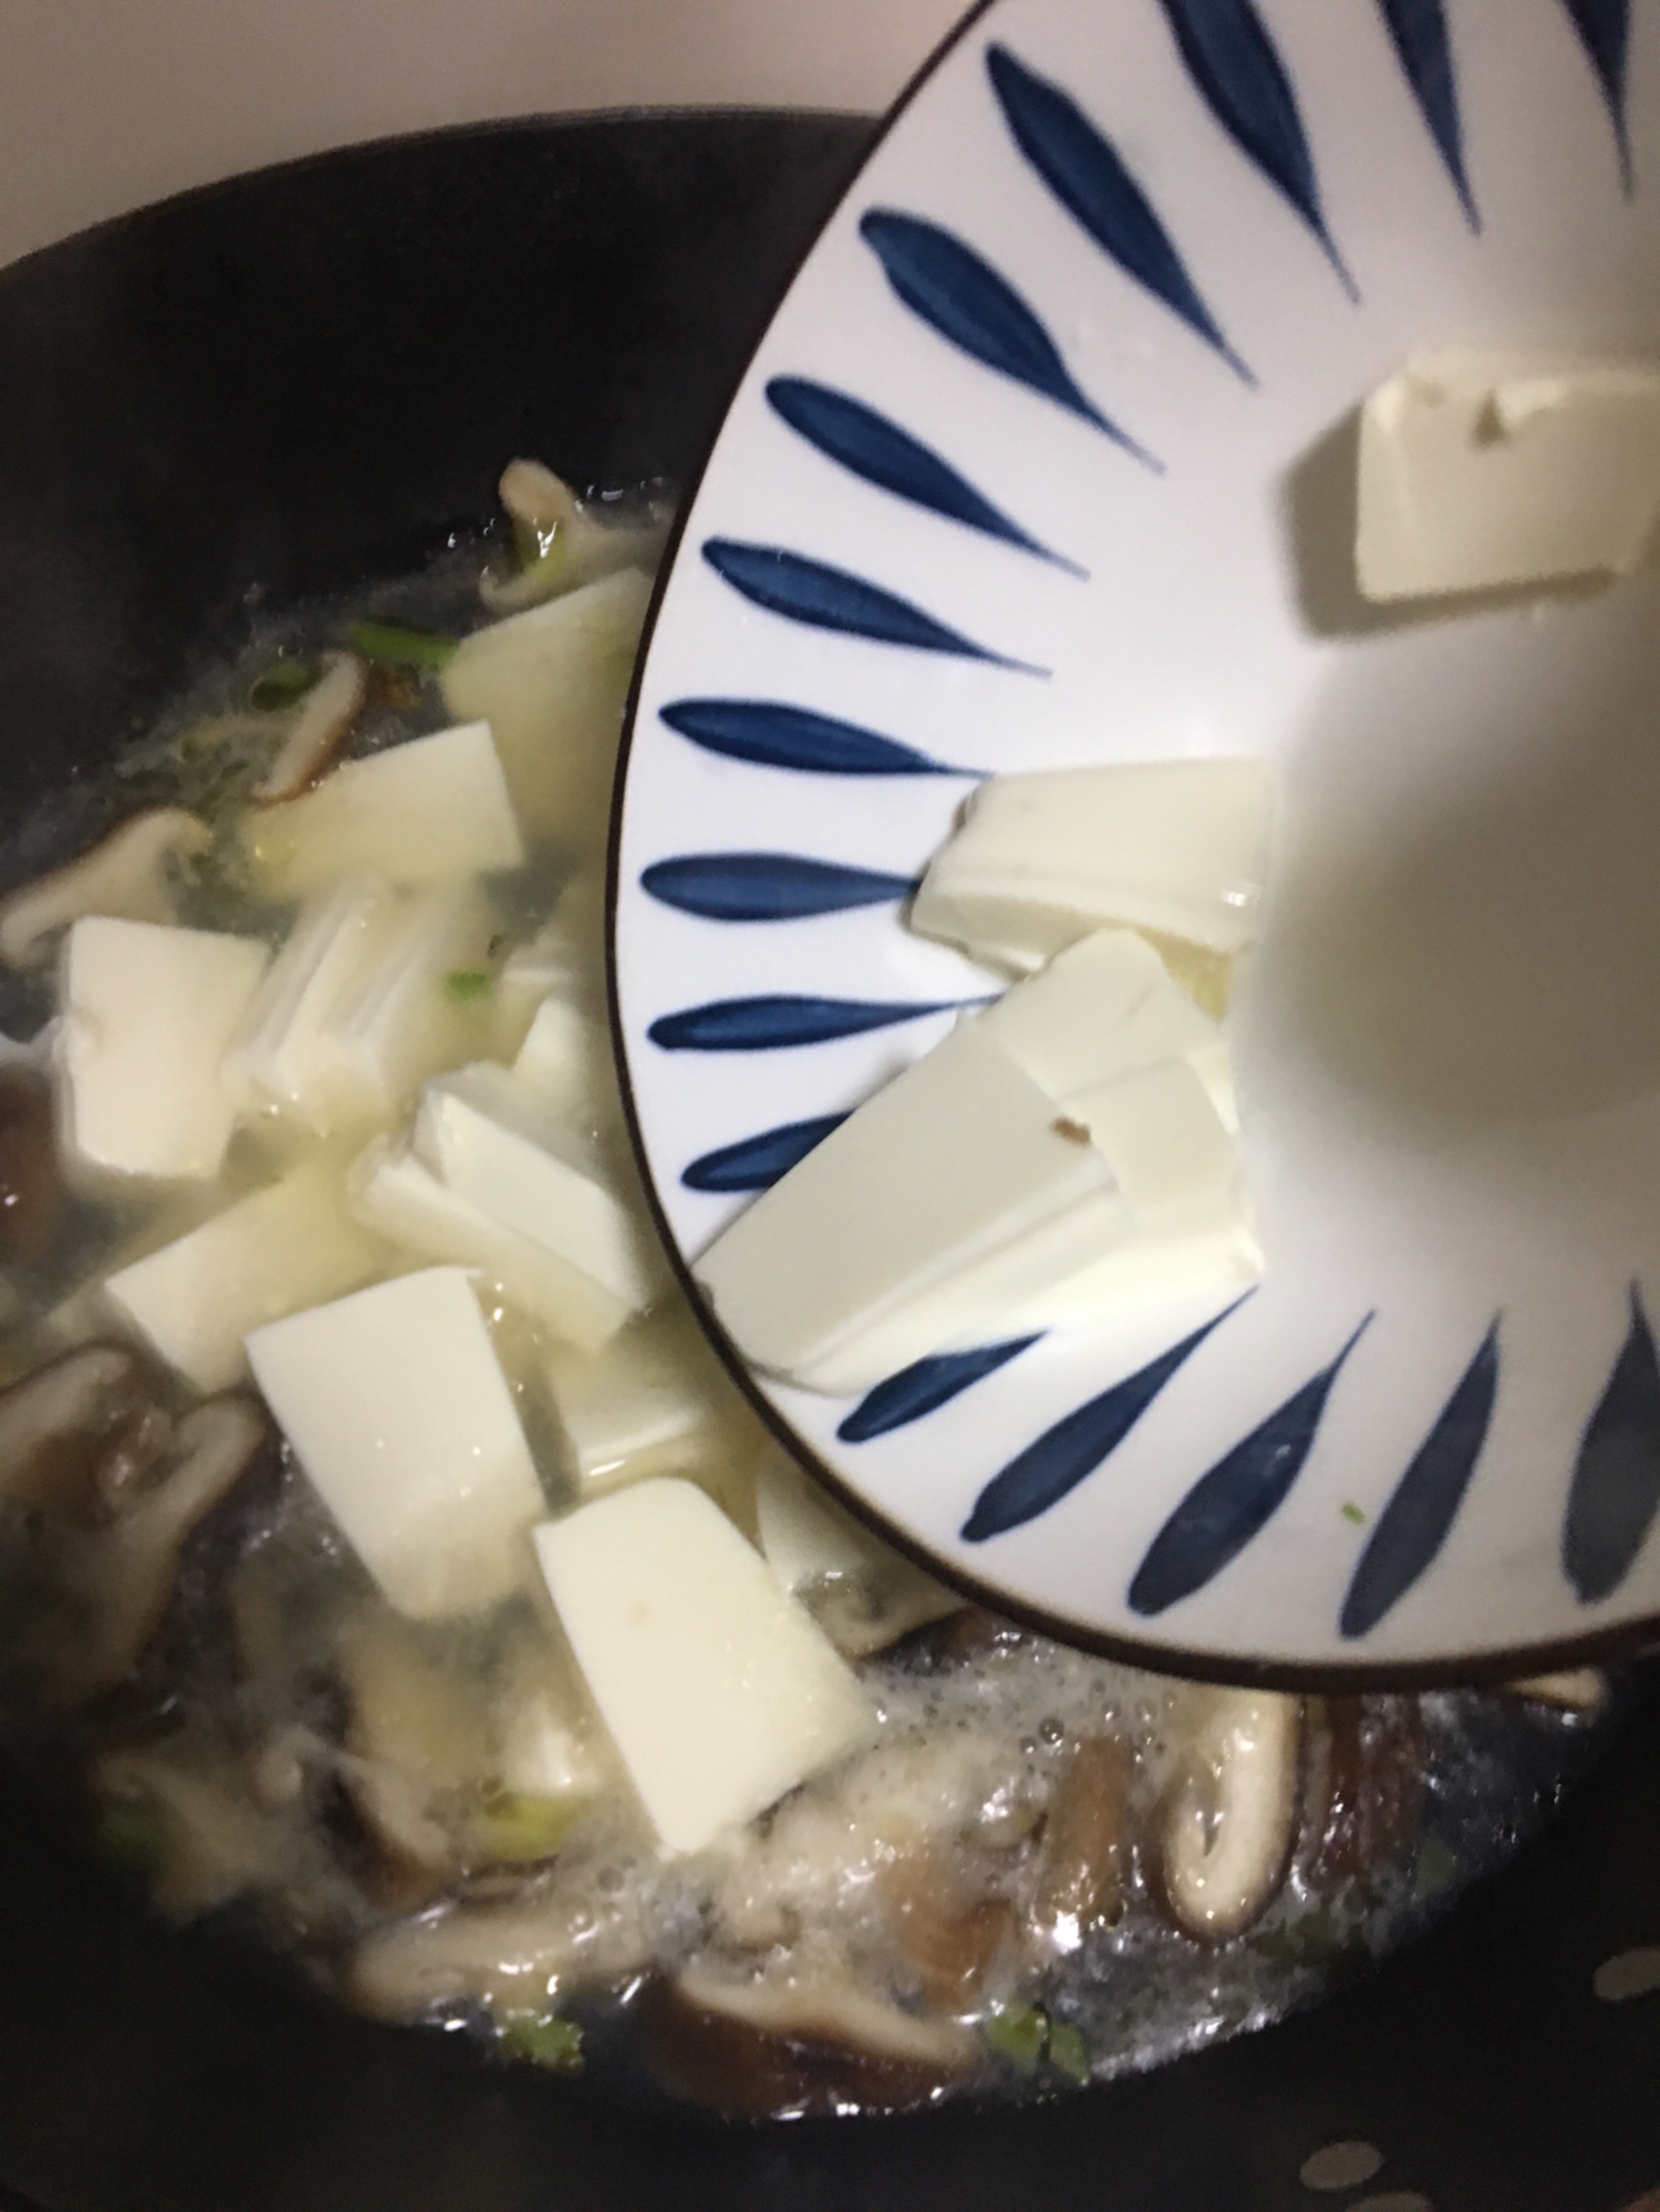 家常菜1：味噌香菇豆腐汤 - 知乎